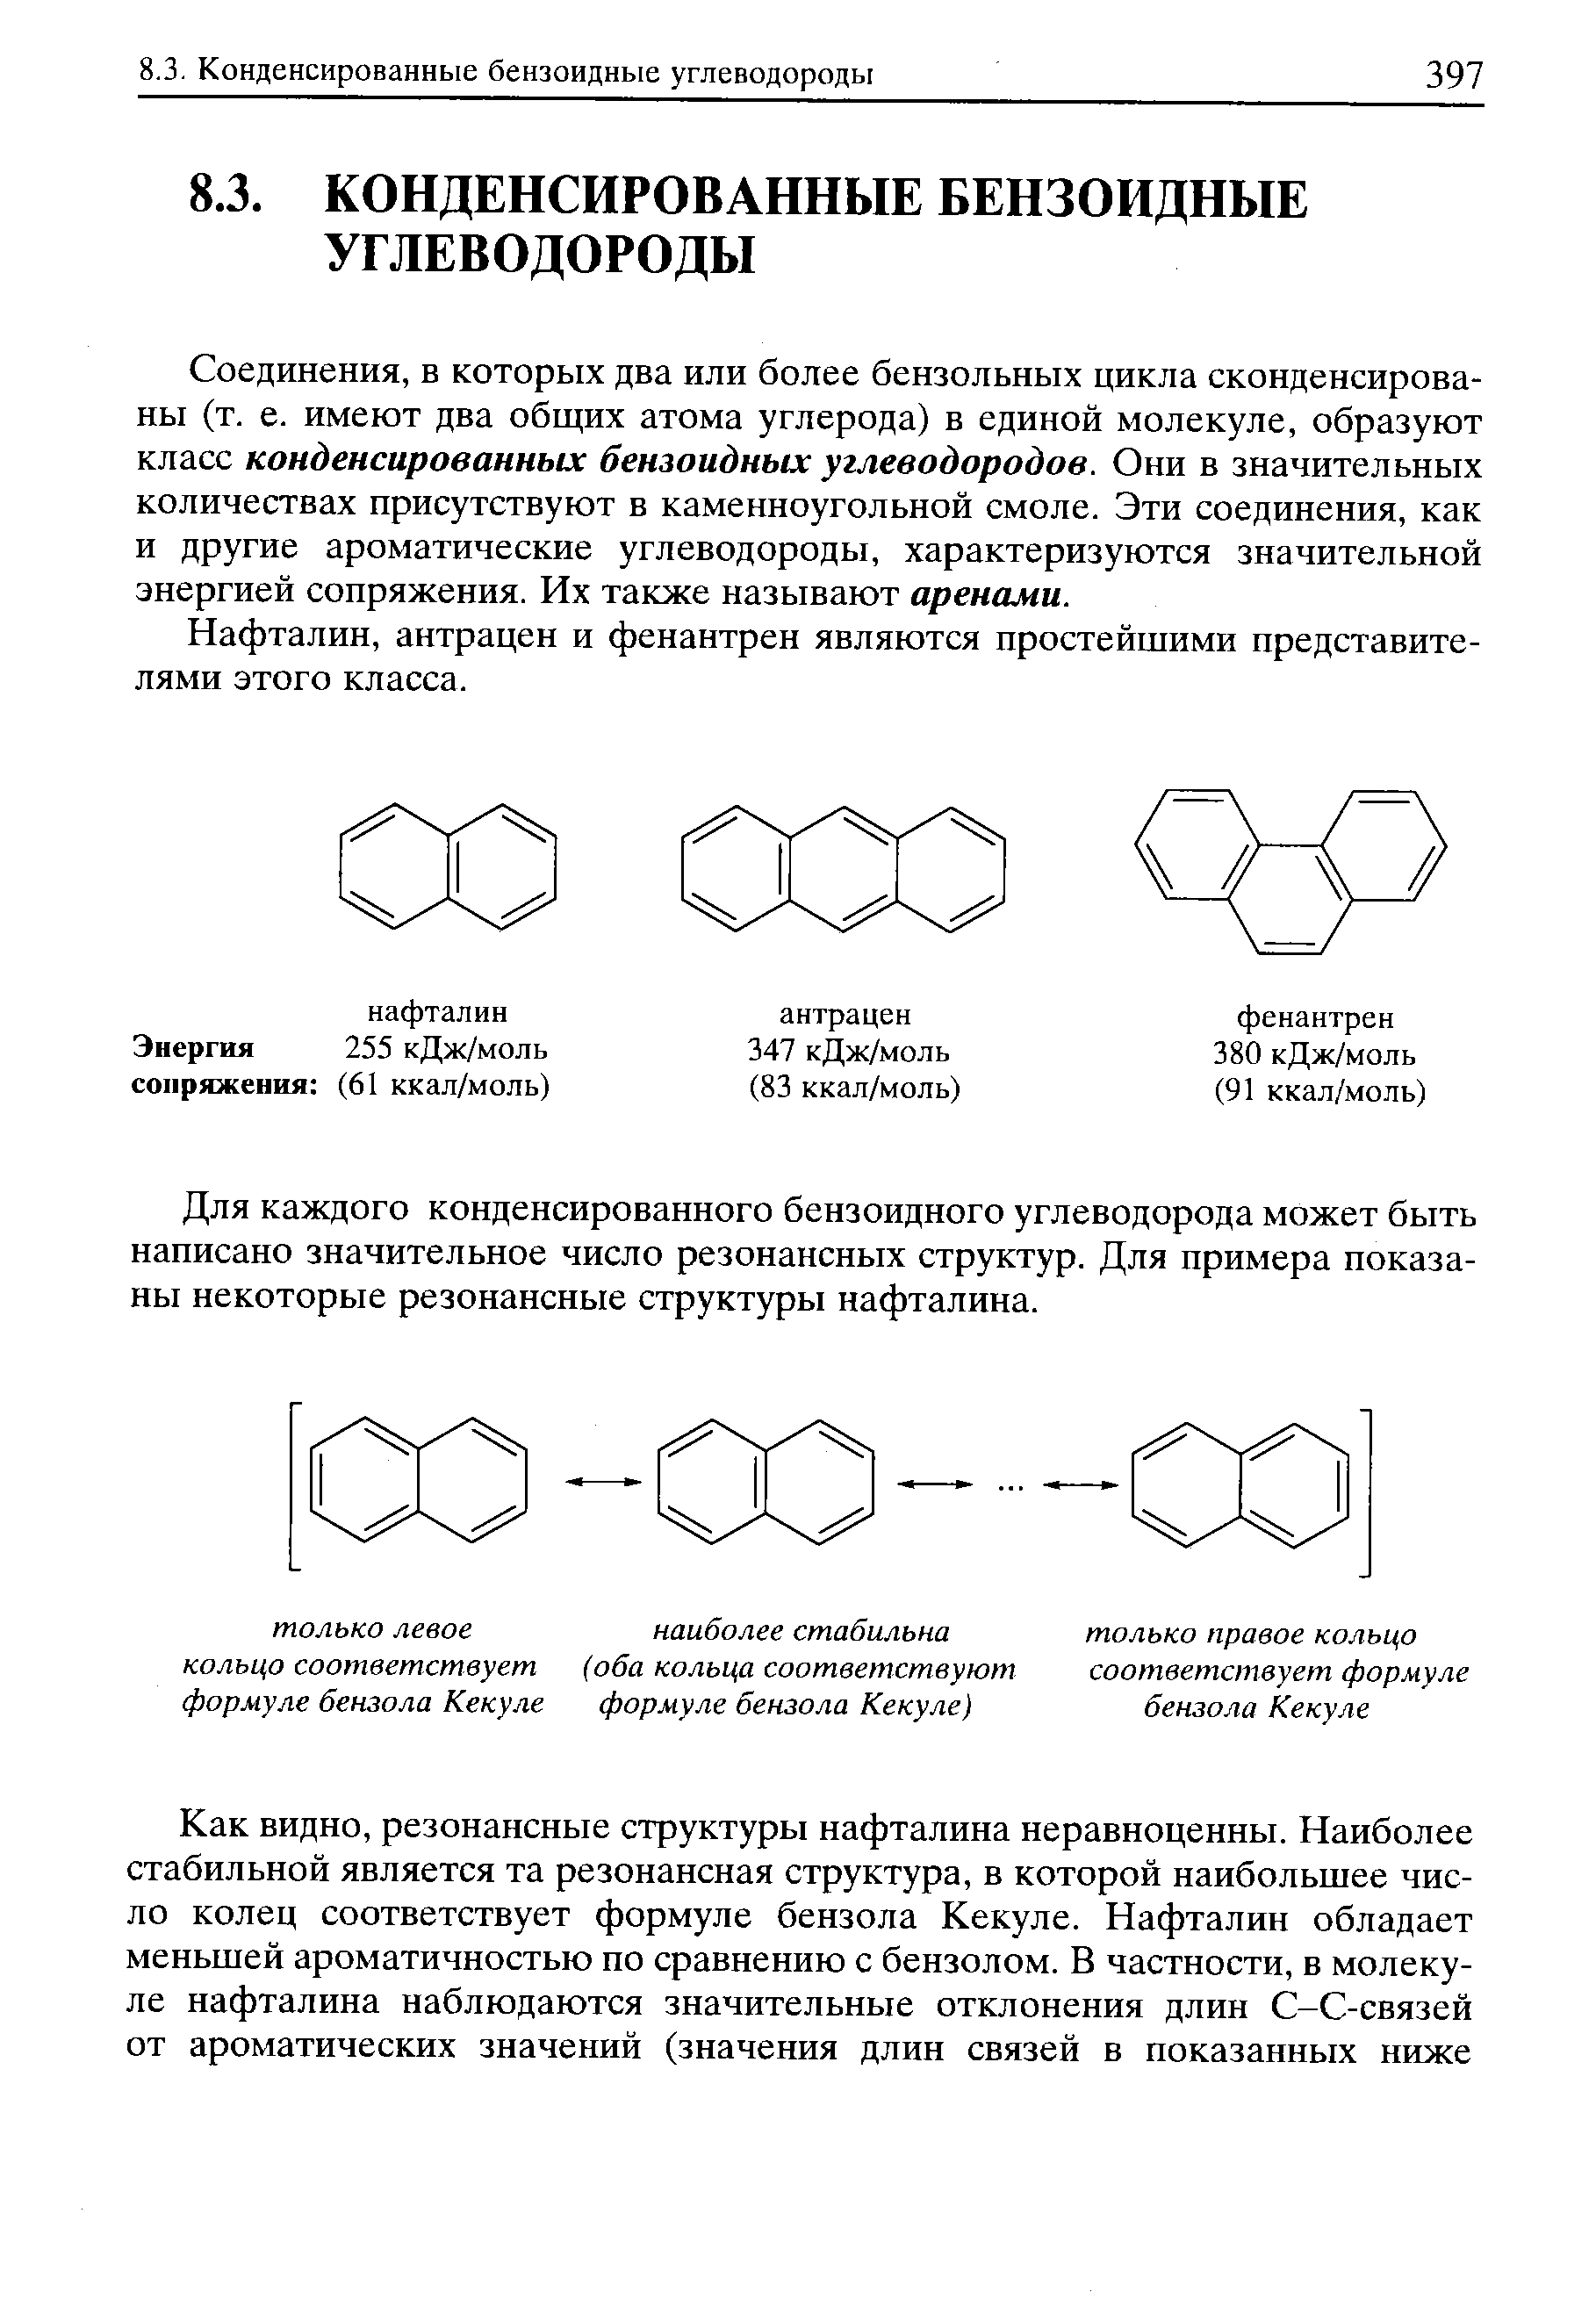 Соединения, в которых два или более бензольных цикла сконденсированы (т. е. имеют два общих атома углерода) в единой молекуле, образуют класс конденсированных бензоидных углеводородов. Они в значительных количествах присутствуют в каменноугольной смоле. Эти соединения, как и другие ароматические углеводороды, характеризуются значительной энергией сопряжения. Их также называют аренами.